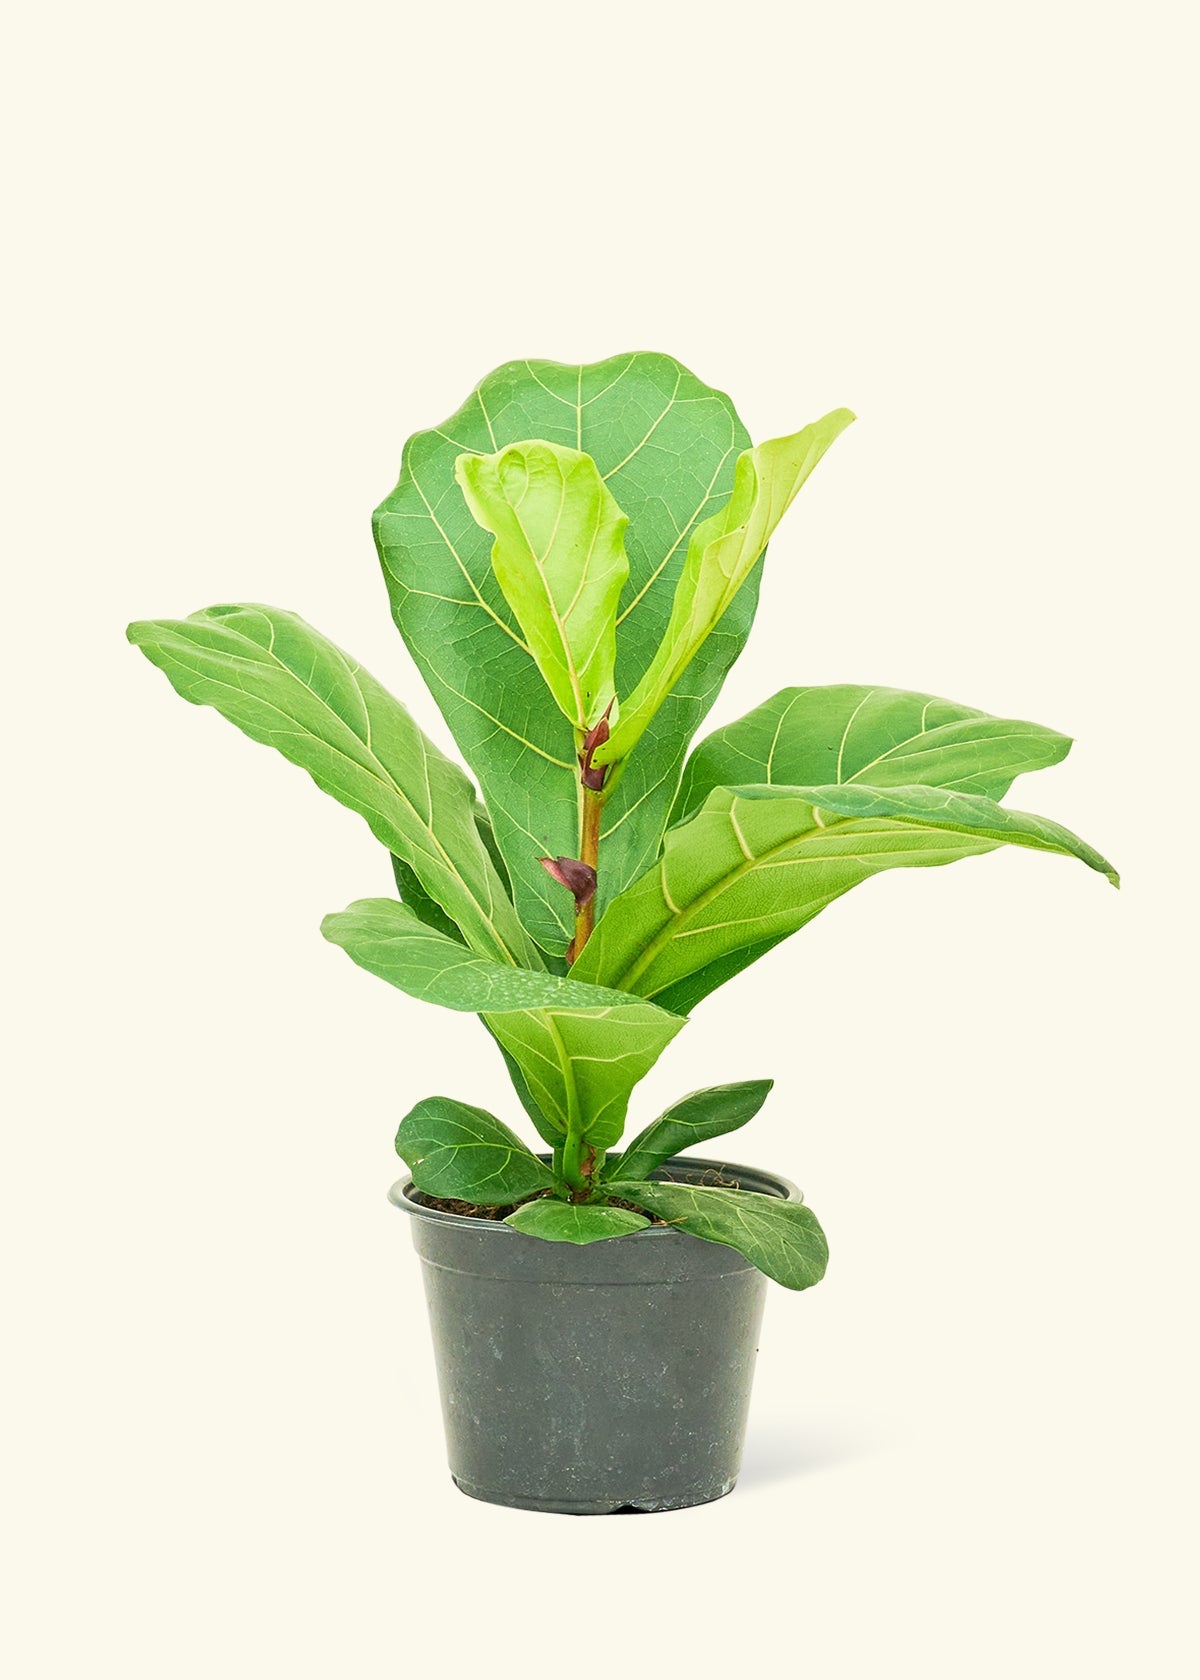 Medium Fiddle Leaf Fig (Ficus lyrata) in ceramic pot.